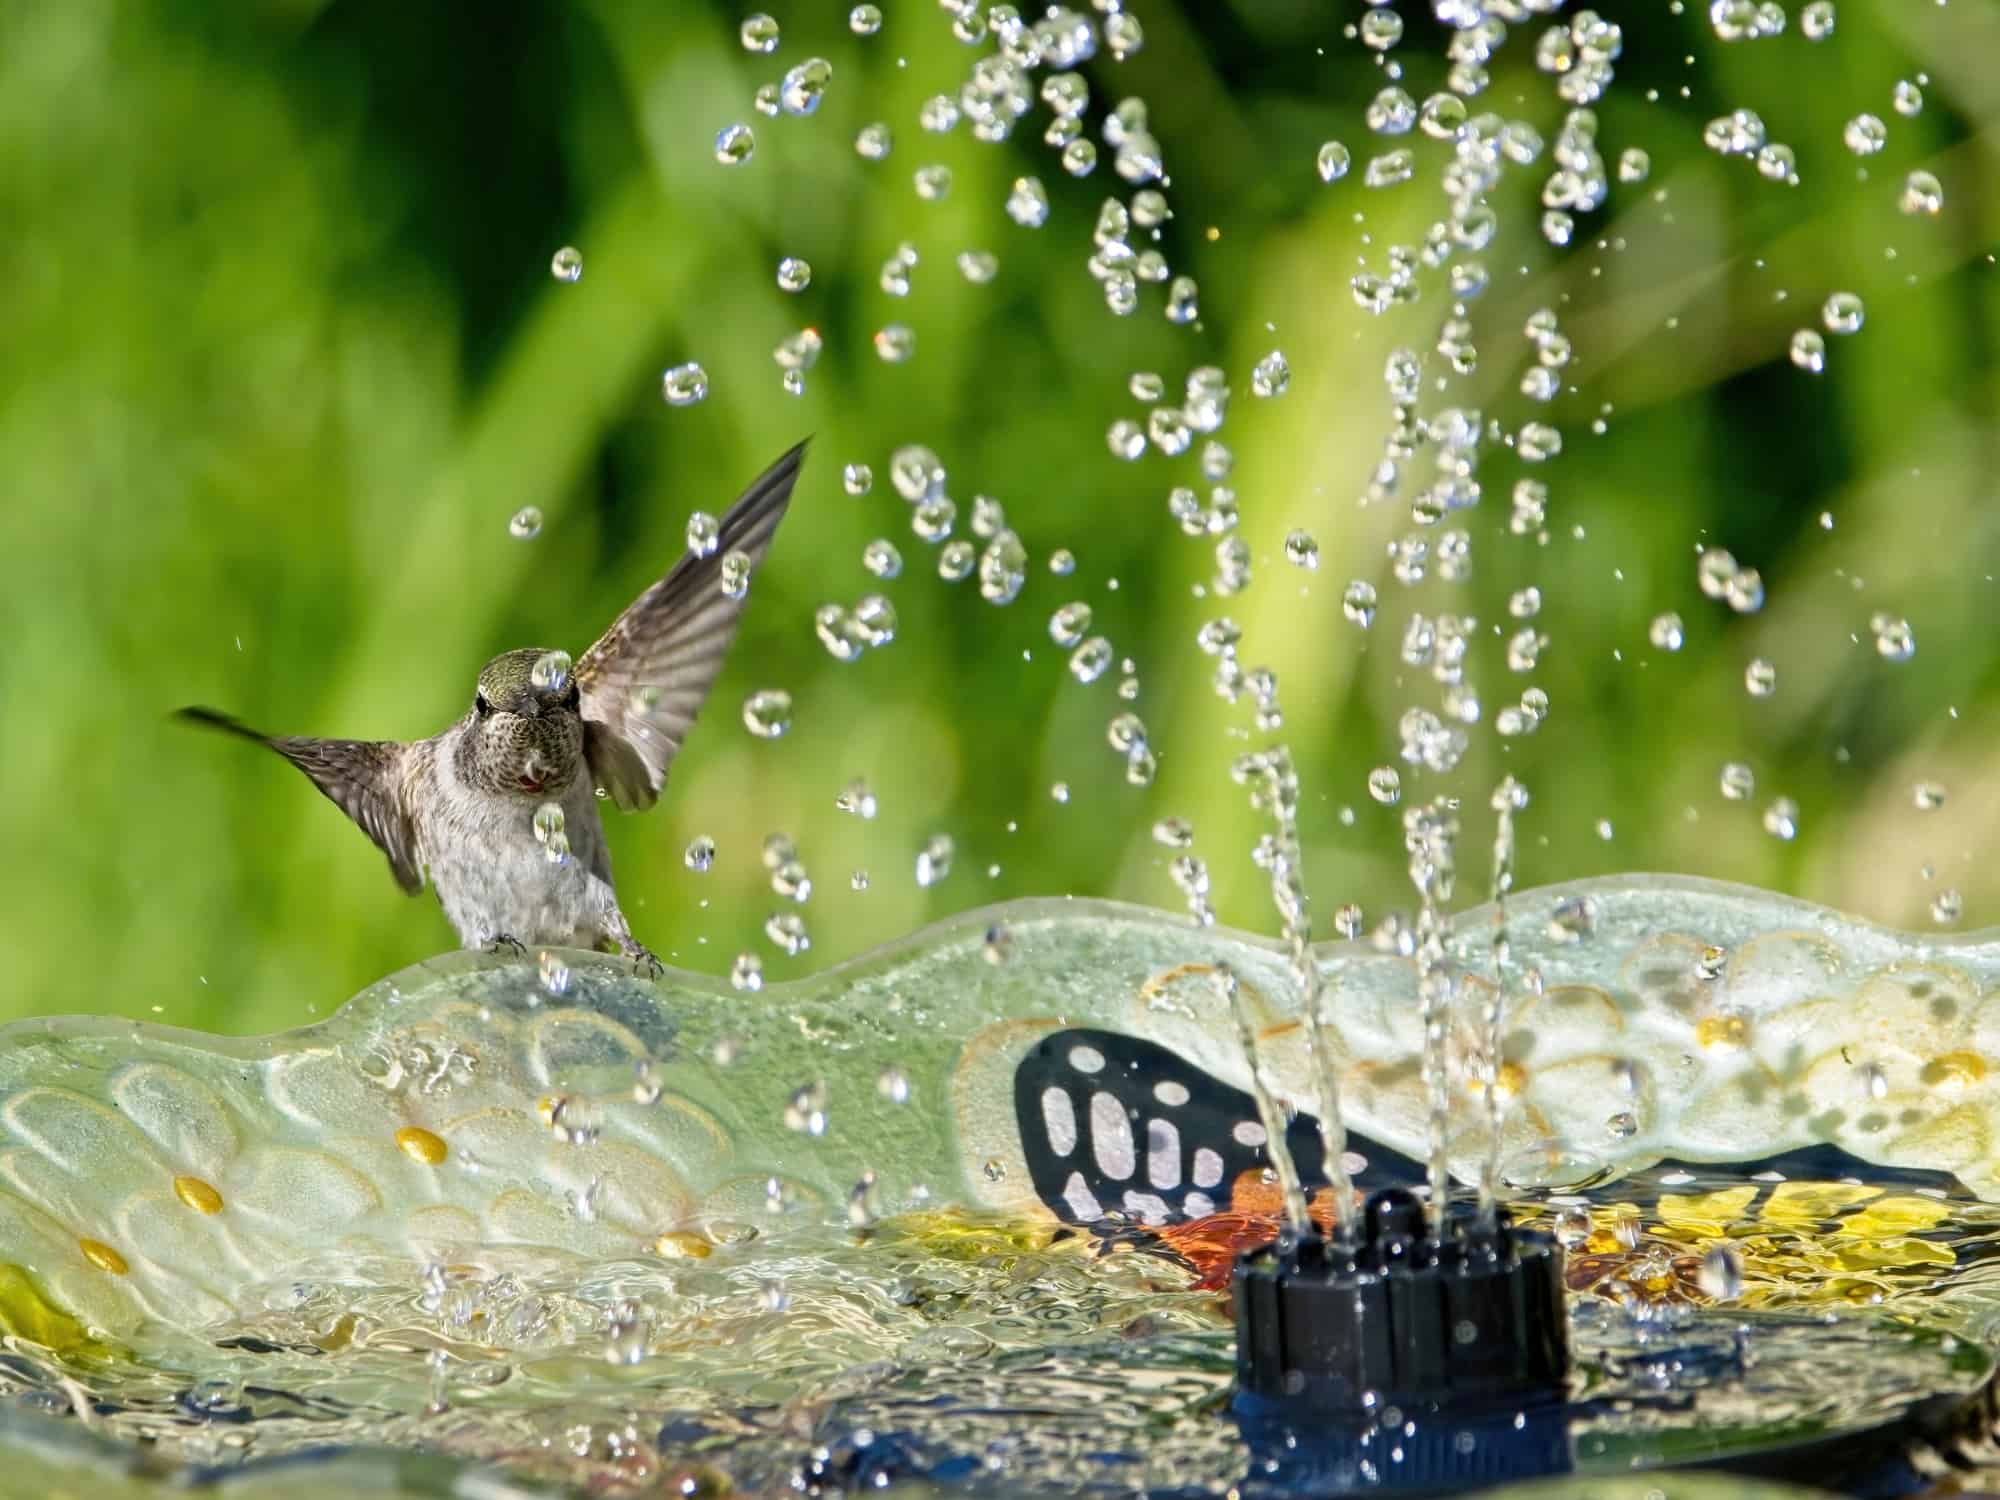 hummingbird playing and drinking in the water fountain in birdbath.